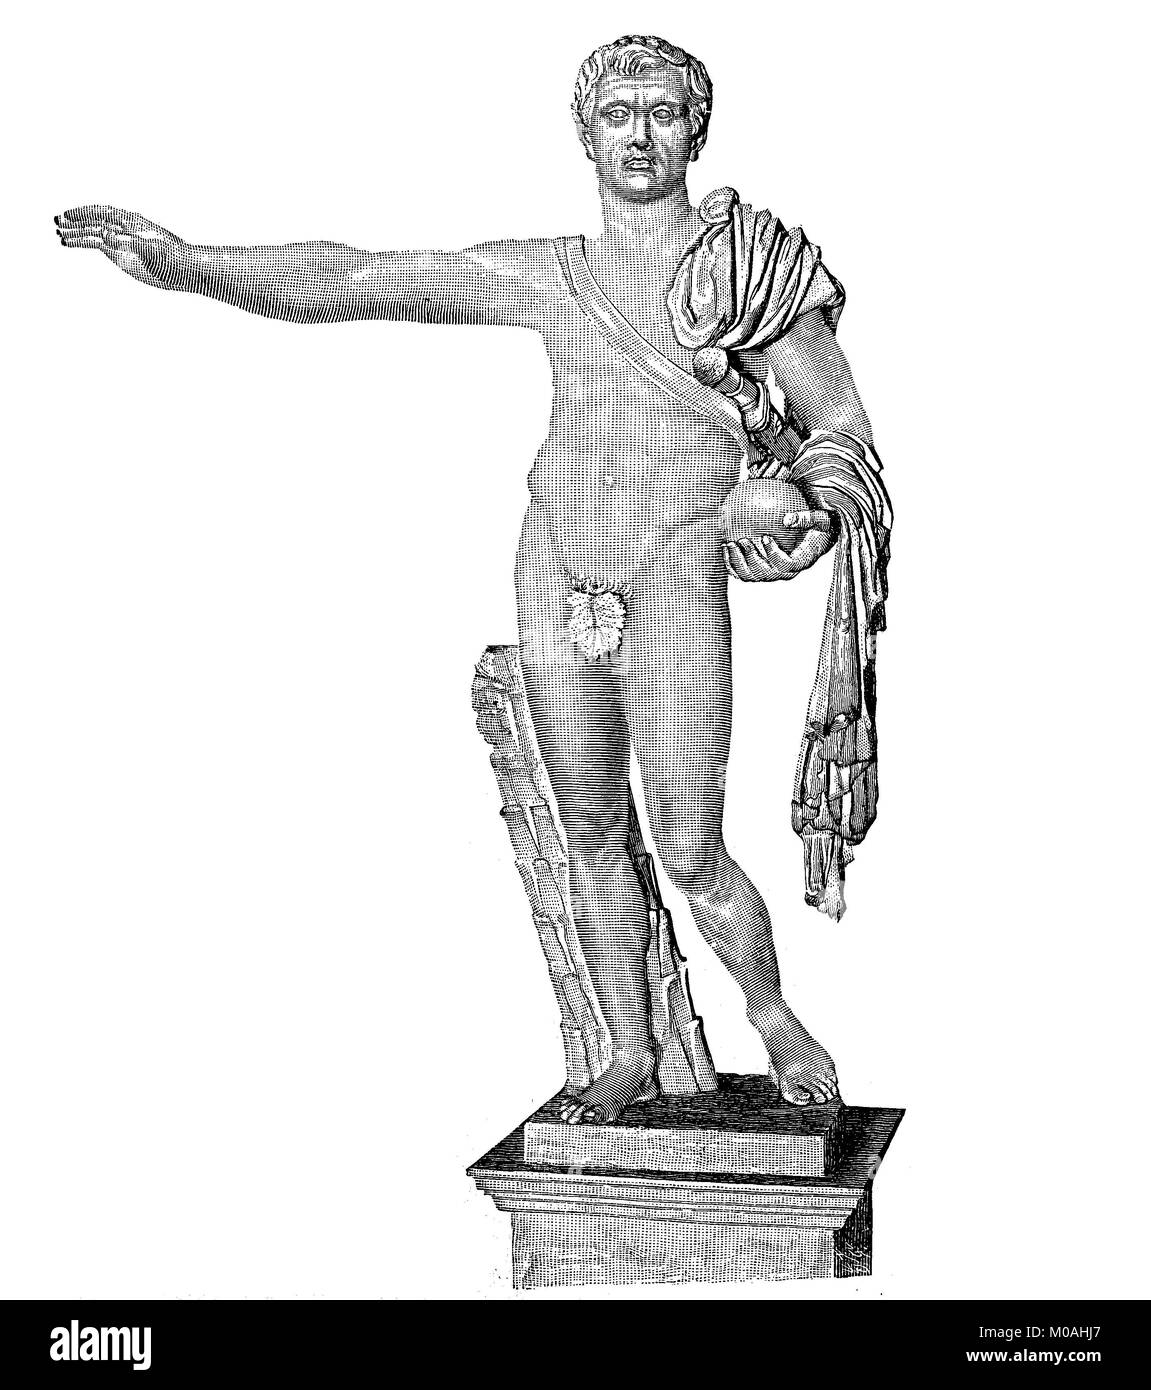 Die Statue von Pompey steht im Palazzo Spada in Rom, Italien, Caesar war zu seinen Füßen ermordet, am 15. März, 44 v. Chr., digital verbesserte Reproduktion des Originals aus dem Jahr 1880 Stockfoto